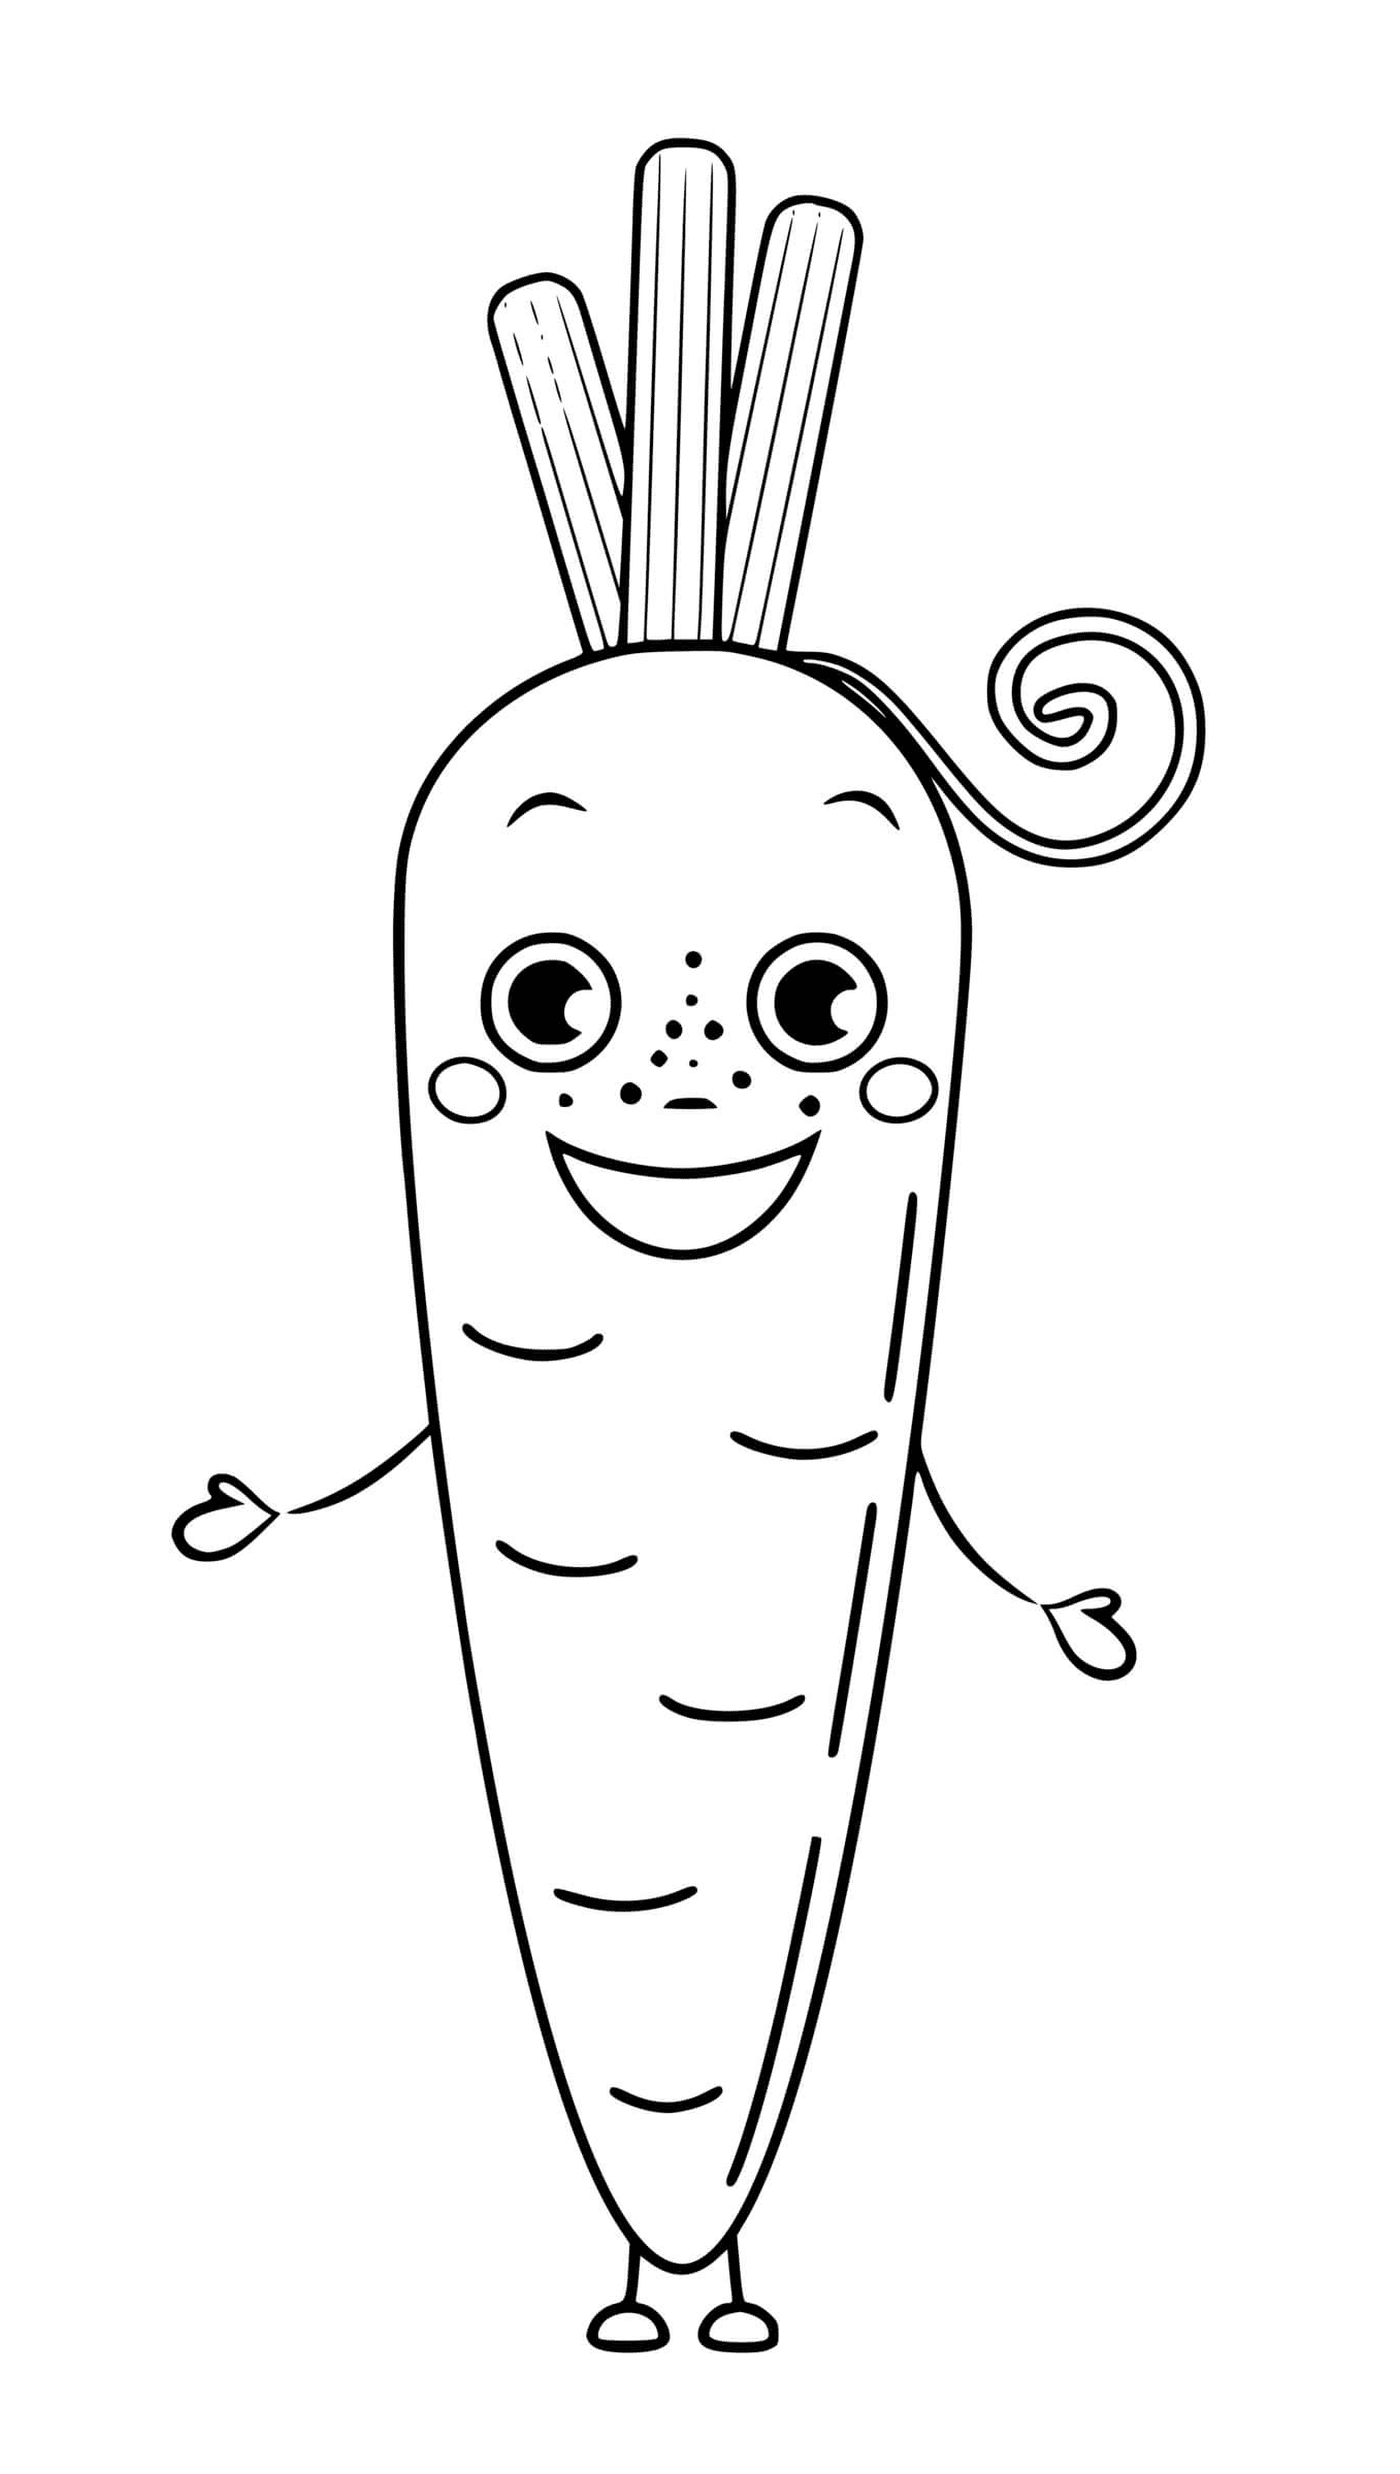 coloriage carotte legume avec yeux et sourire